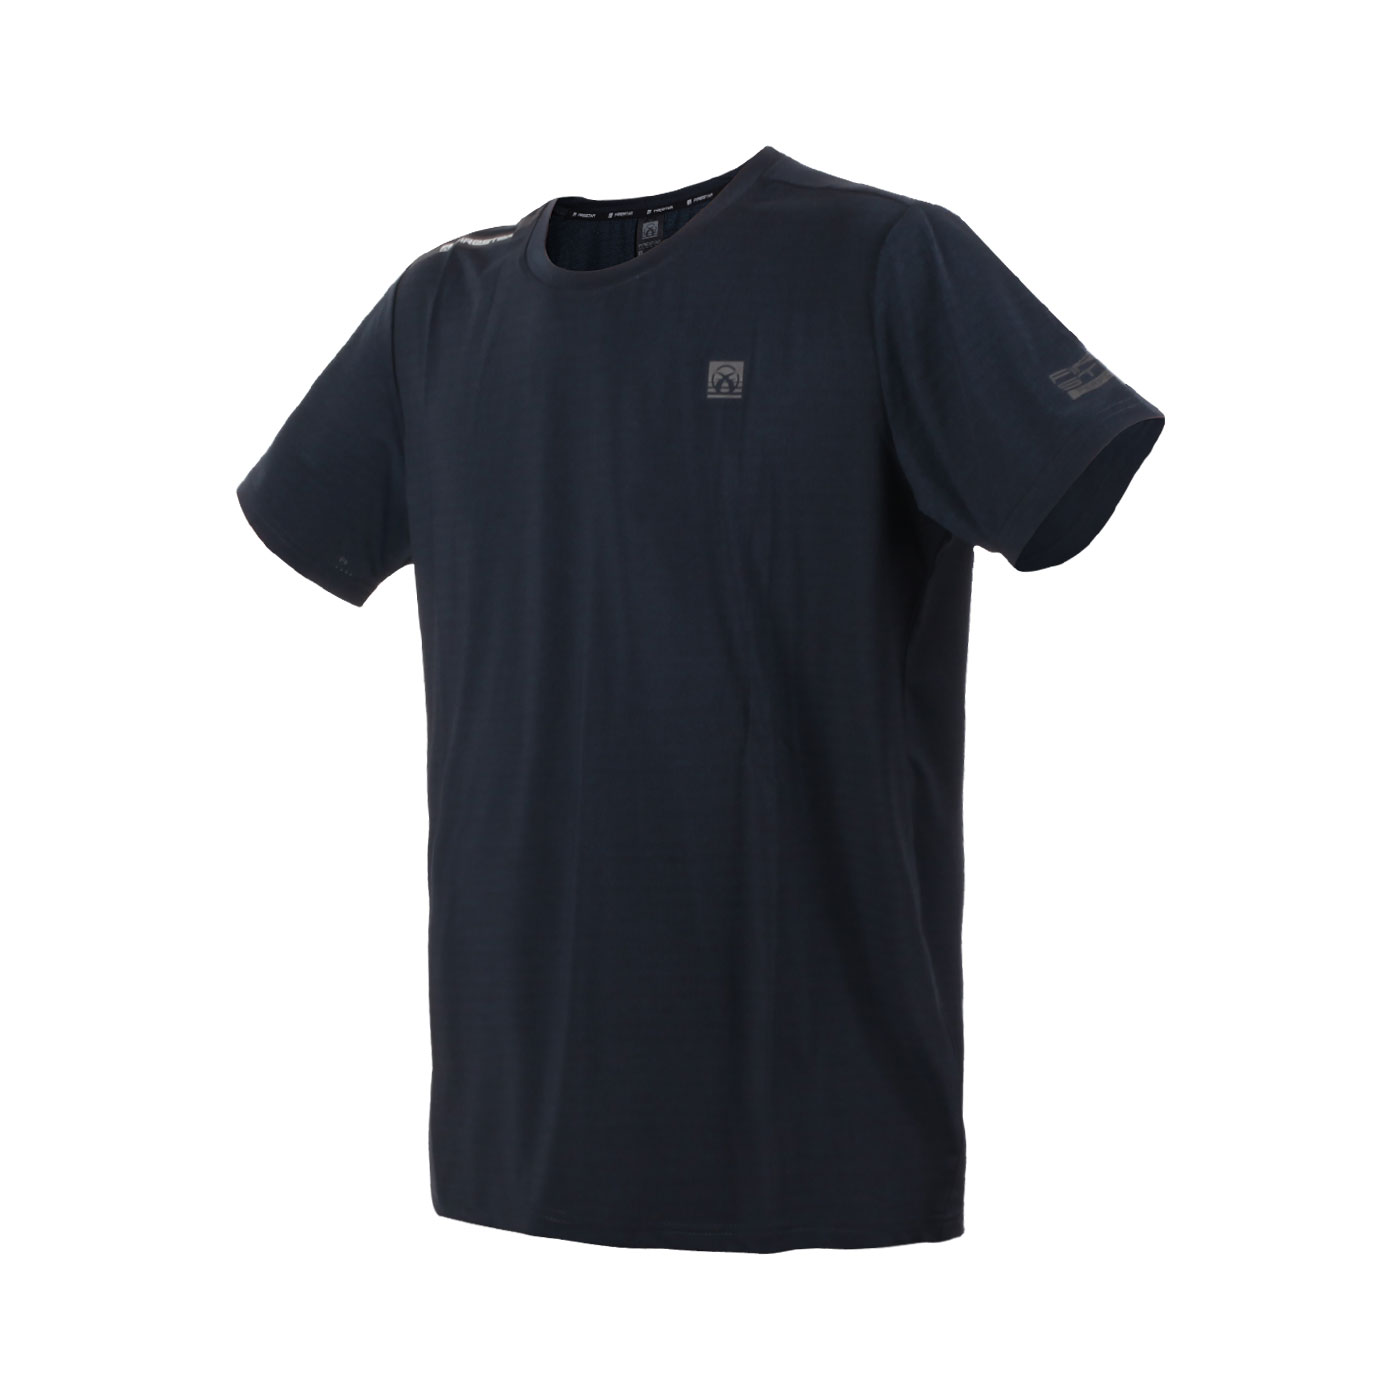 FIRESTAR 男款彈性圓領短袖T恤  D3233-98